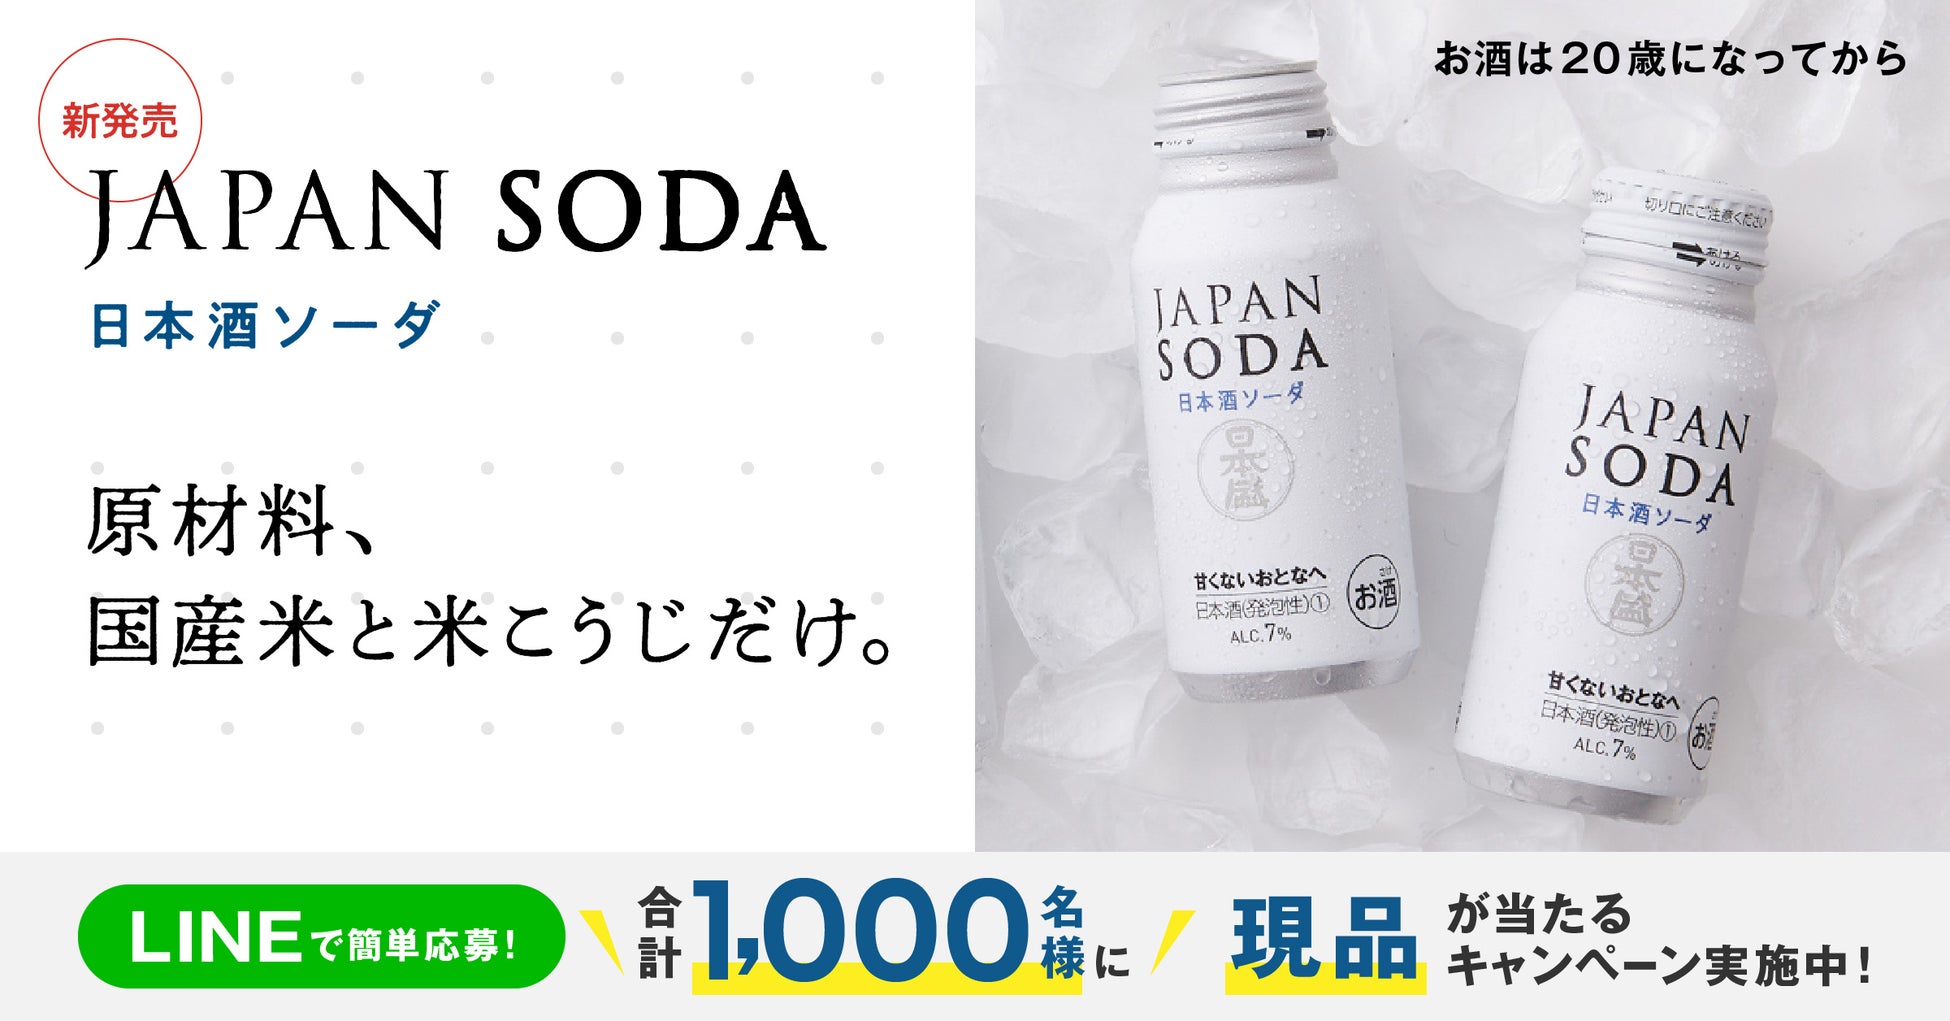 「JAPAN SODAサンプリングキャンペーン」開催のお知らせ